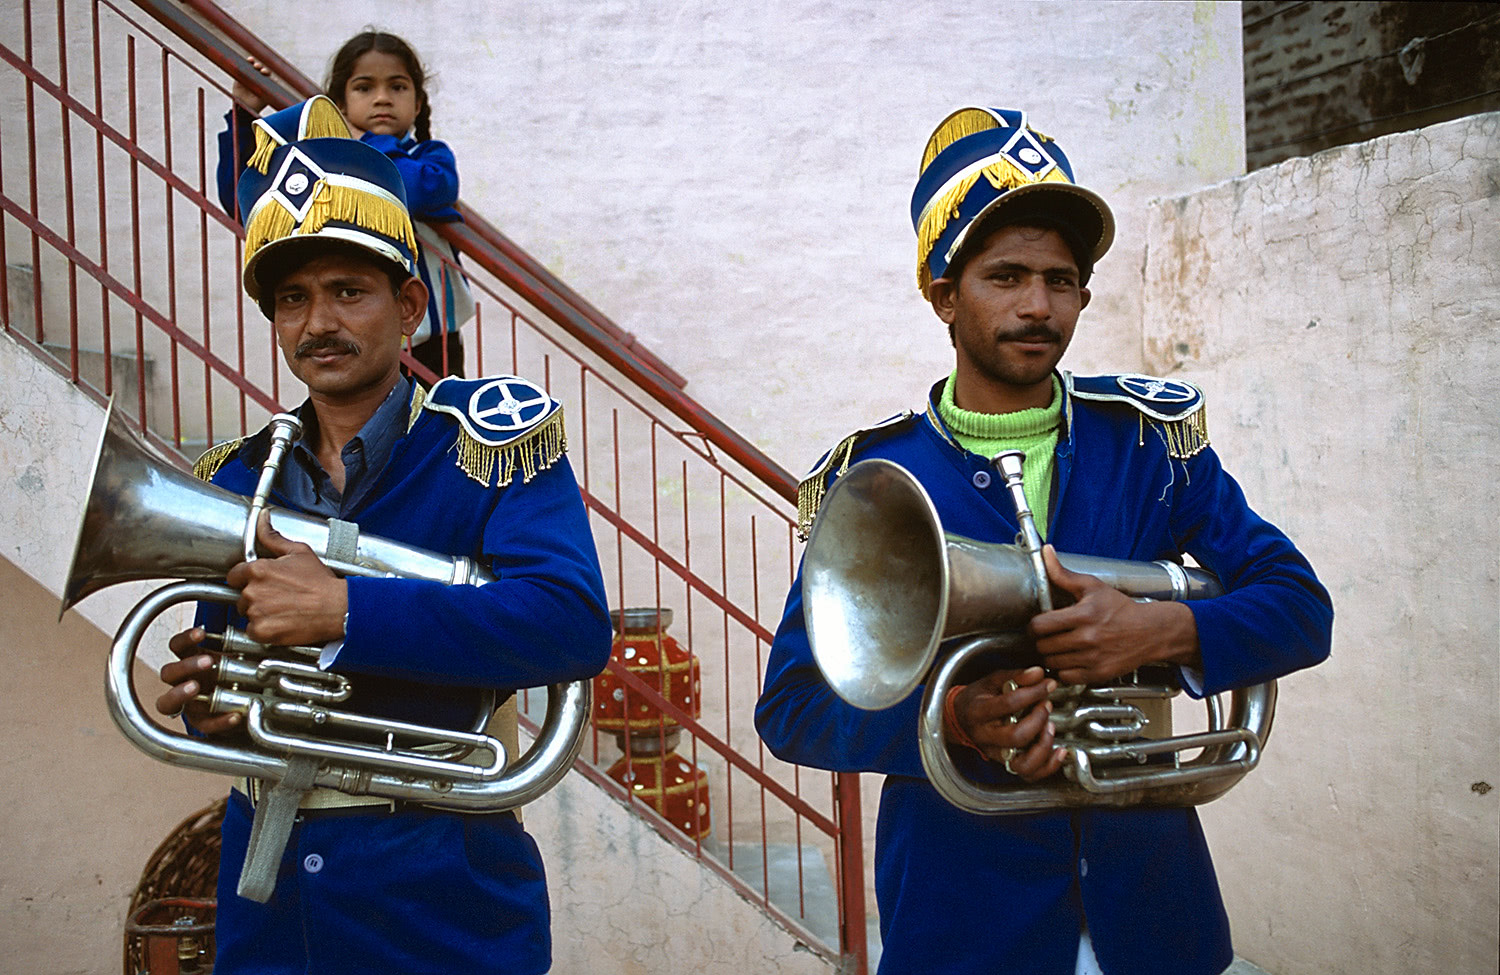 Wedding trumpeters in Punjab